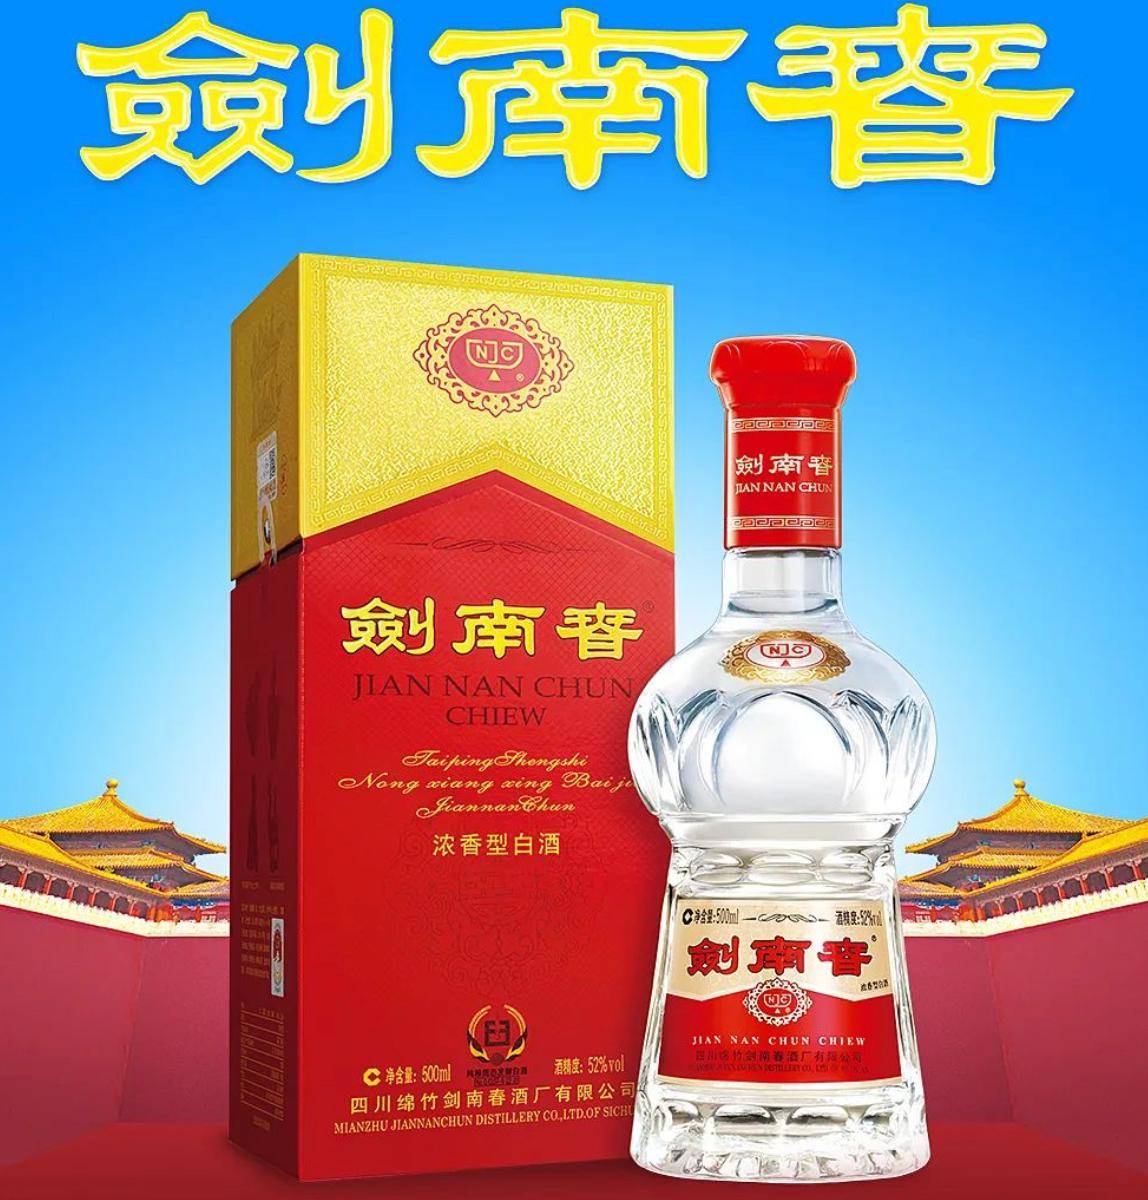 剑南春3月1日提价,出厂价上涨15元/瓶丨酒眼·超级产品